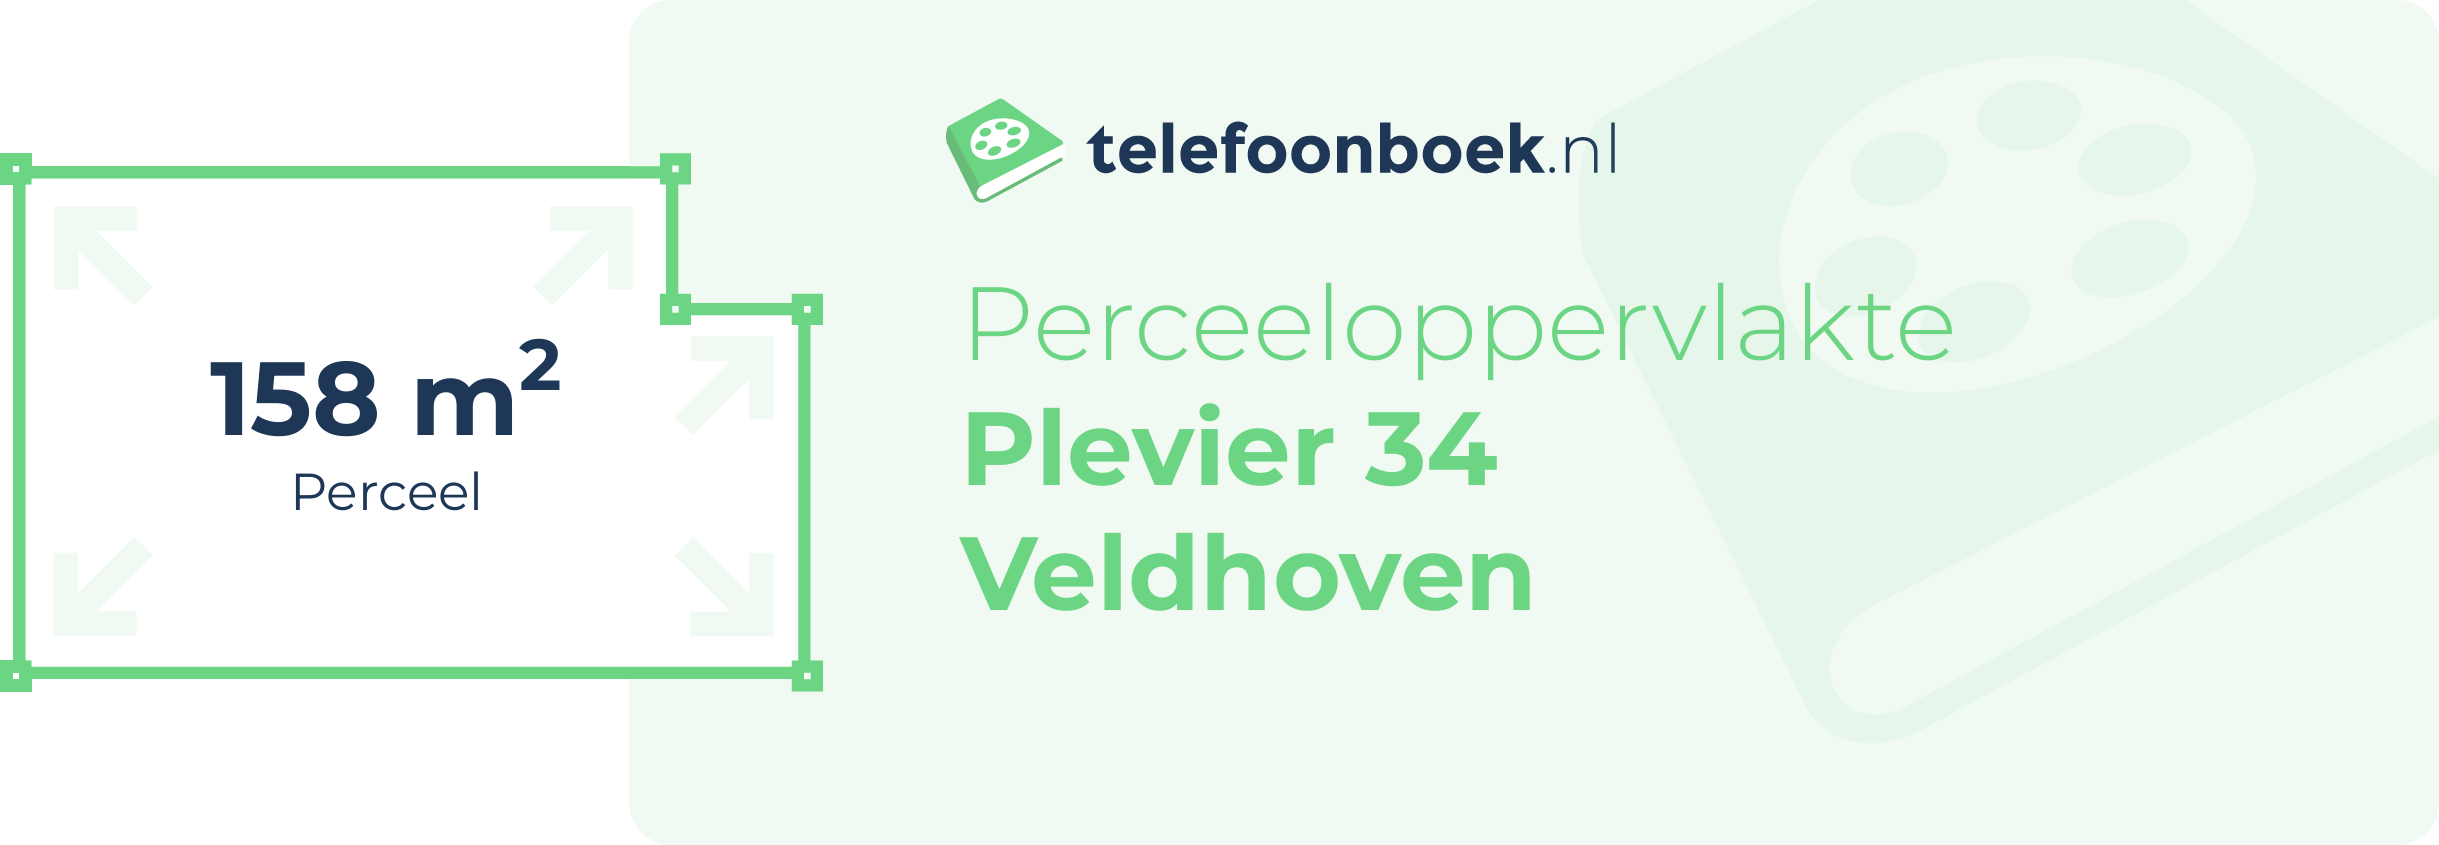 Perceeloppervlakte Plevier 34 Veldhoven